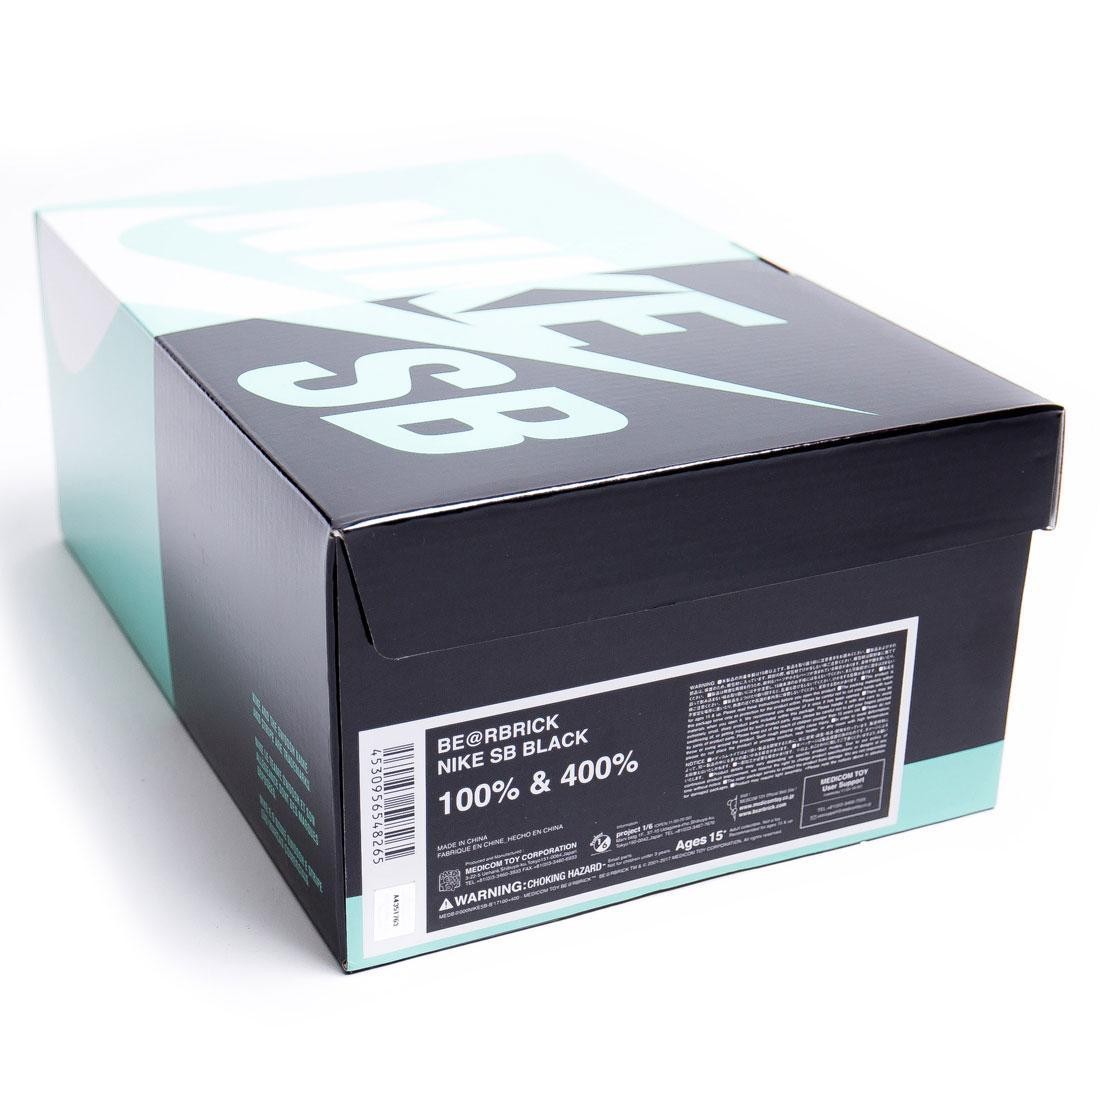 Medicom Nike SB 100% 400% Bearbrick Figure Set (black)